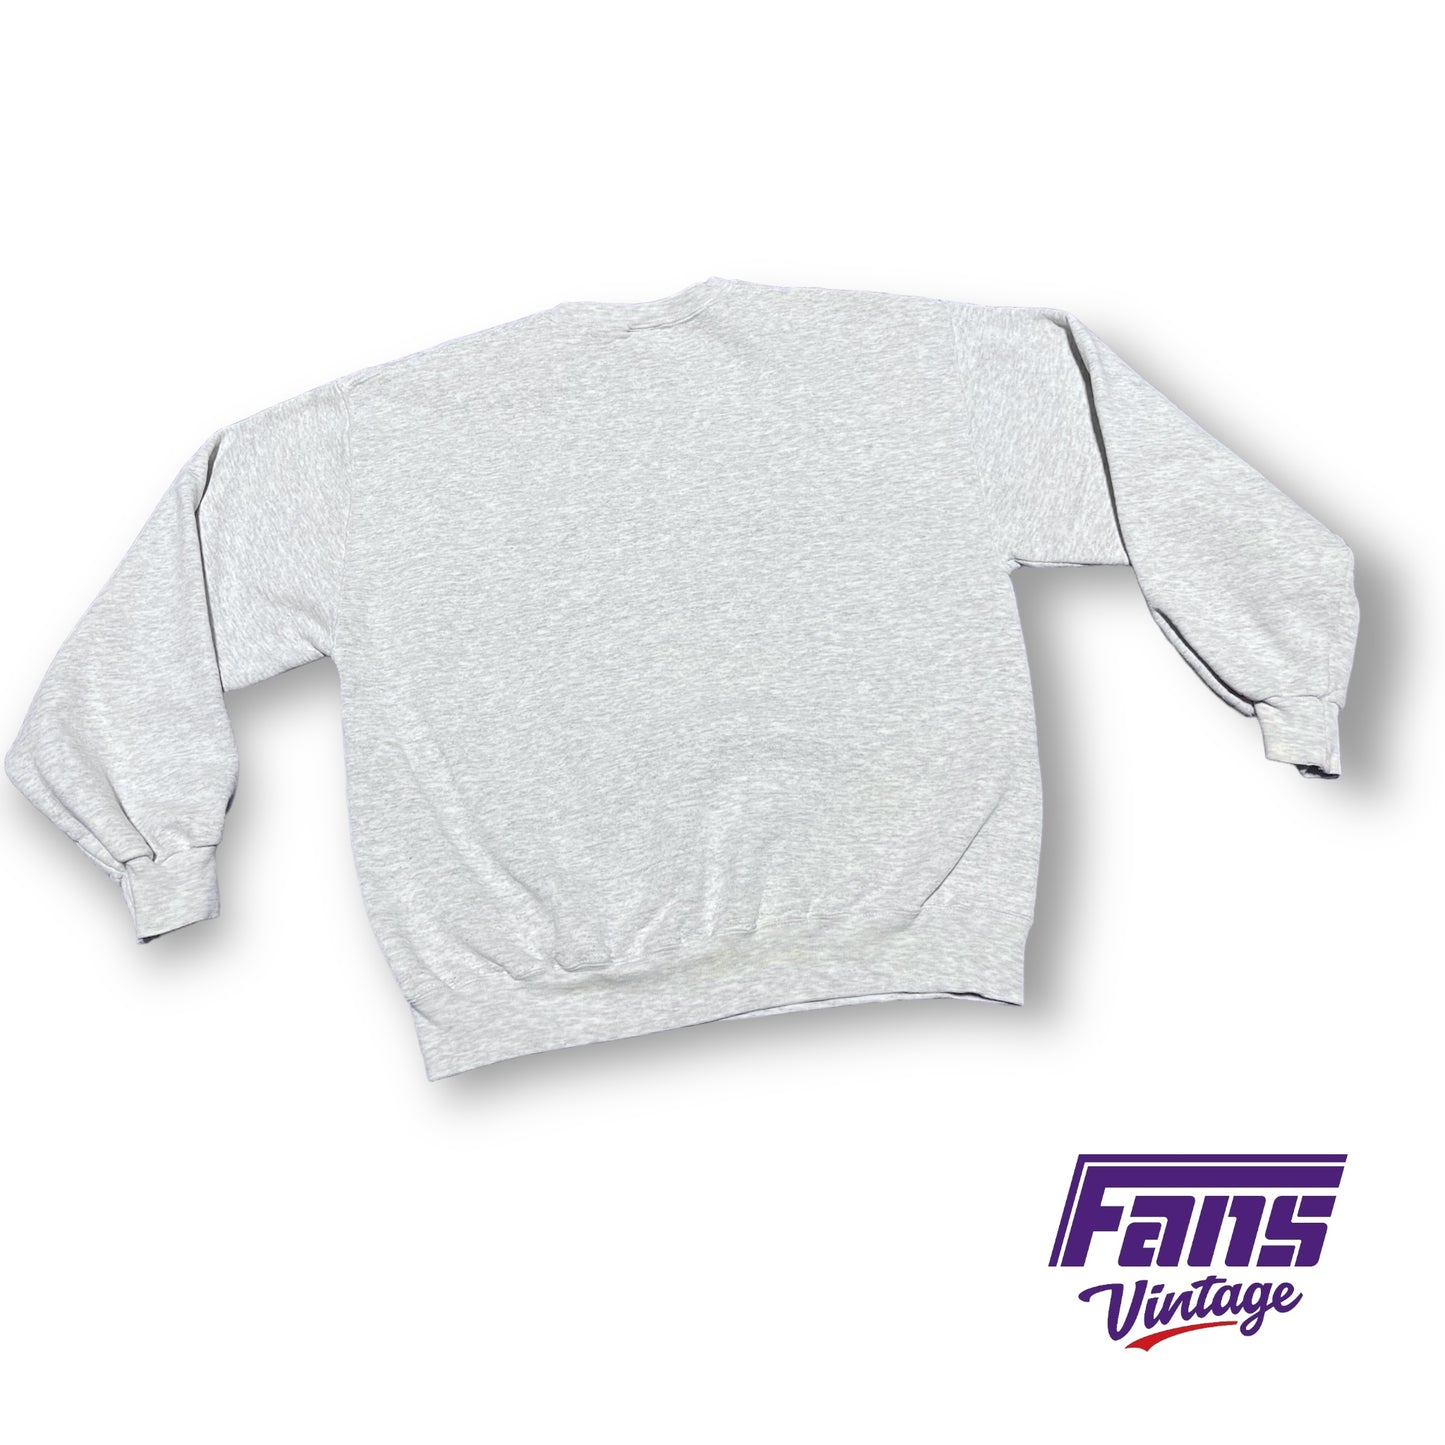 Vintage TCU Soccer Crewneck Sweater - RARE!